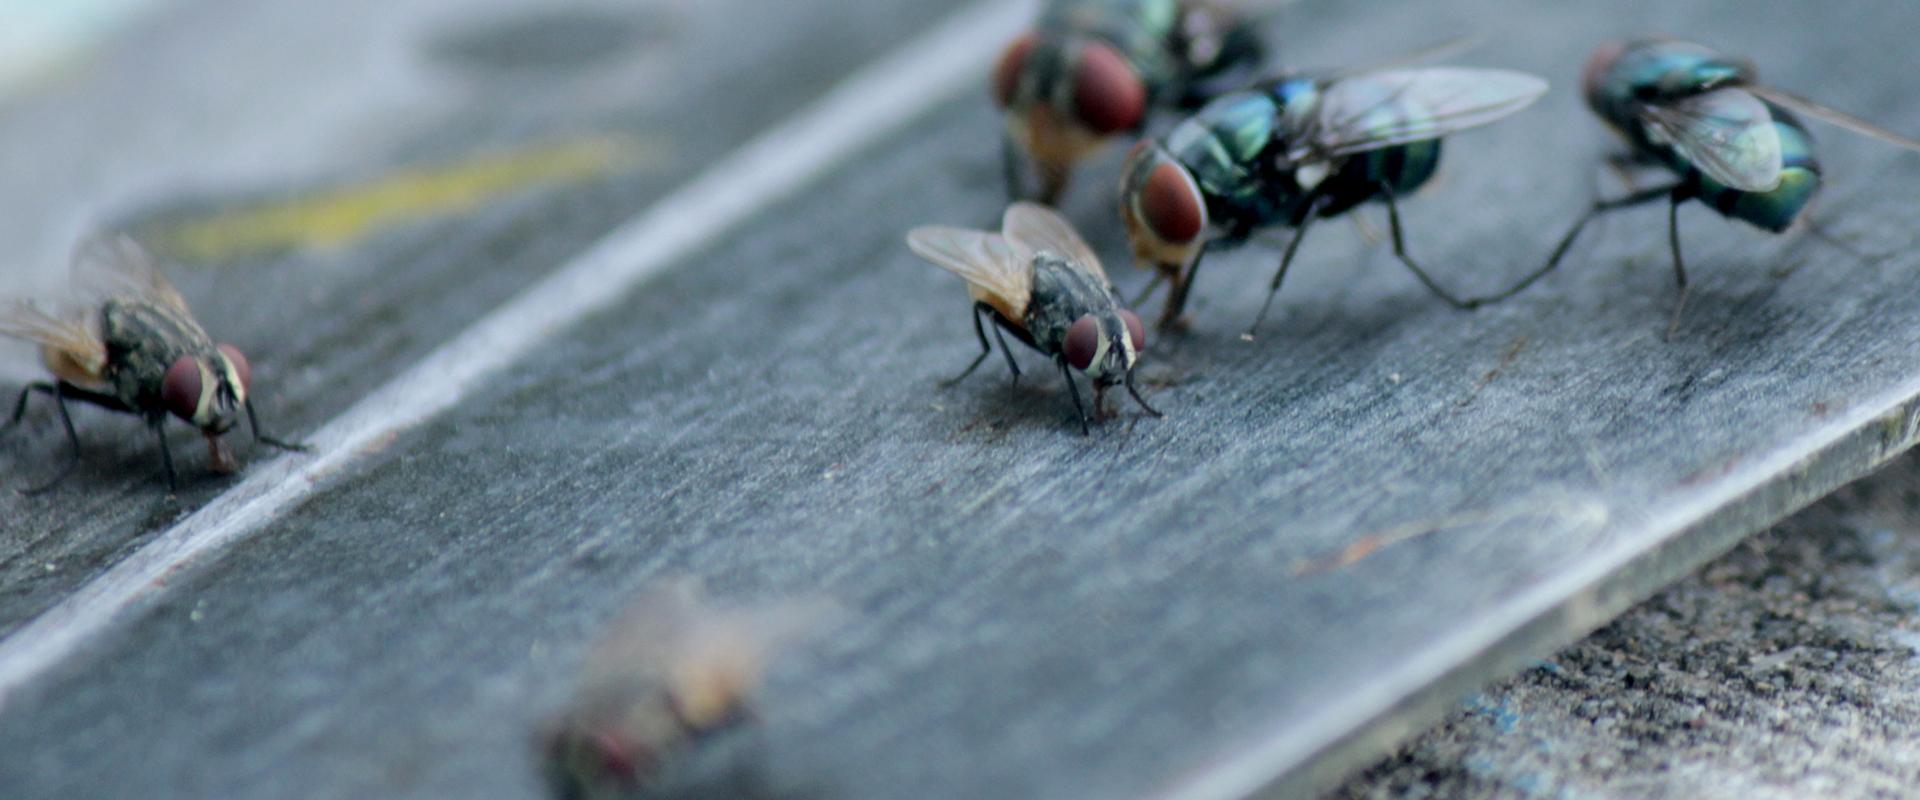 close up of flies